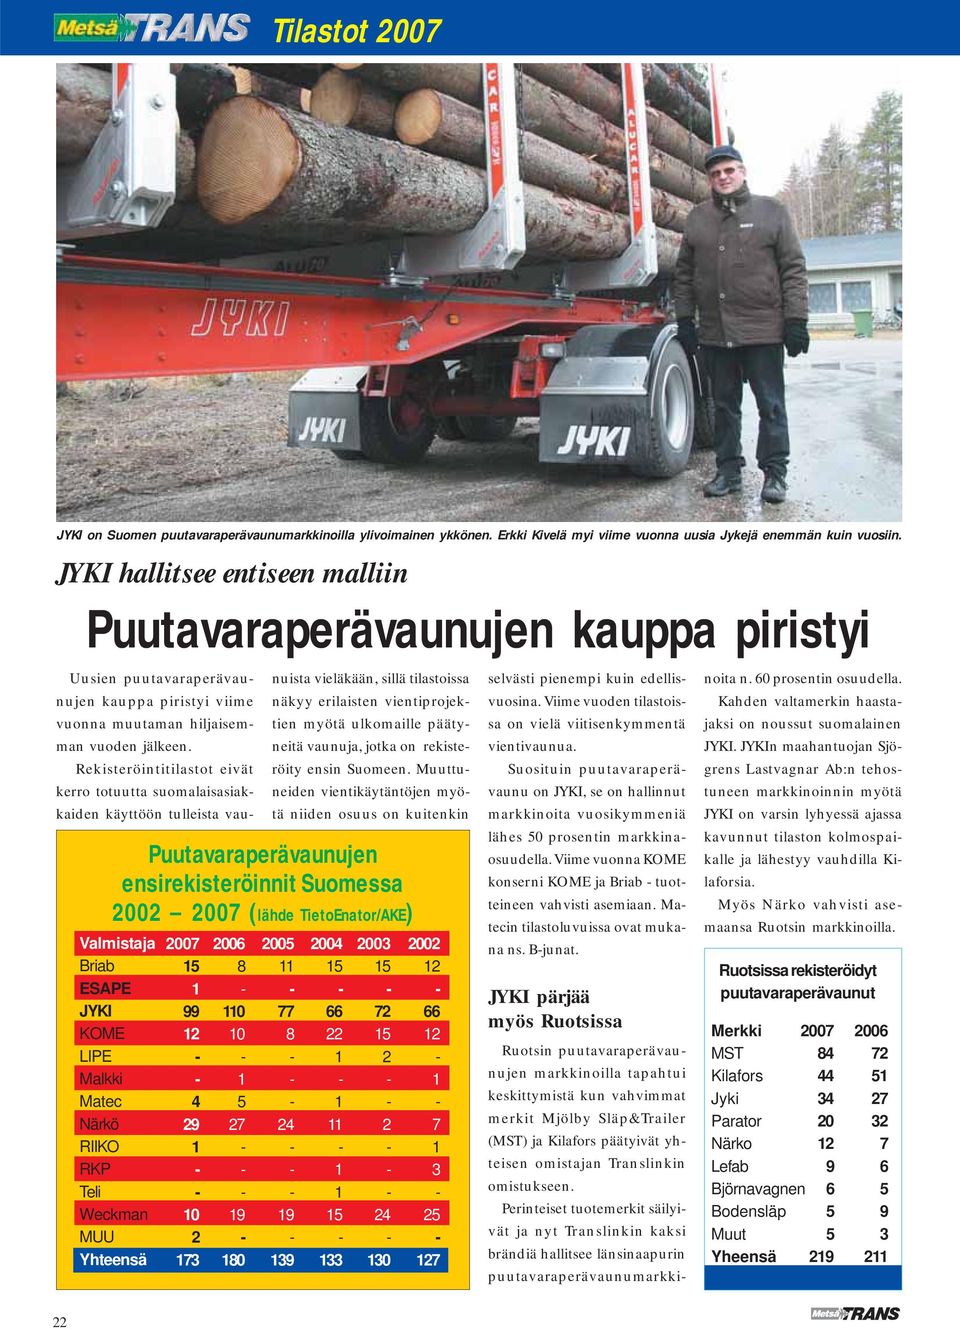 Matec Närkö RIIKO RKP Teli Weckman MUU 00 0 00 0 0 0 Uusien puutavaraperävaunujen kauppa piristyi viime vuonna muutaman hiljaisemman vuoden jälkeen.